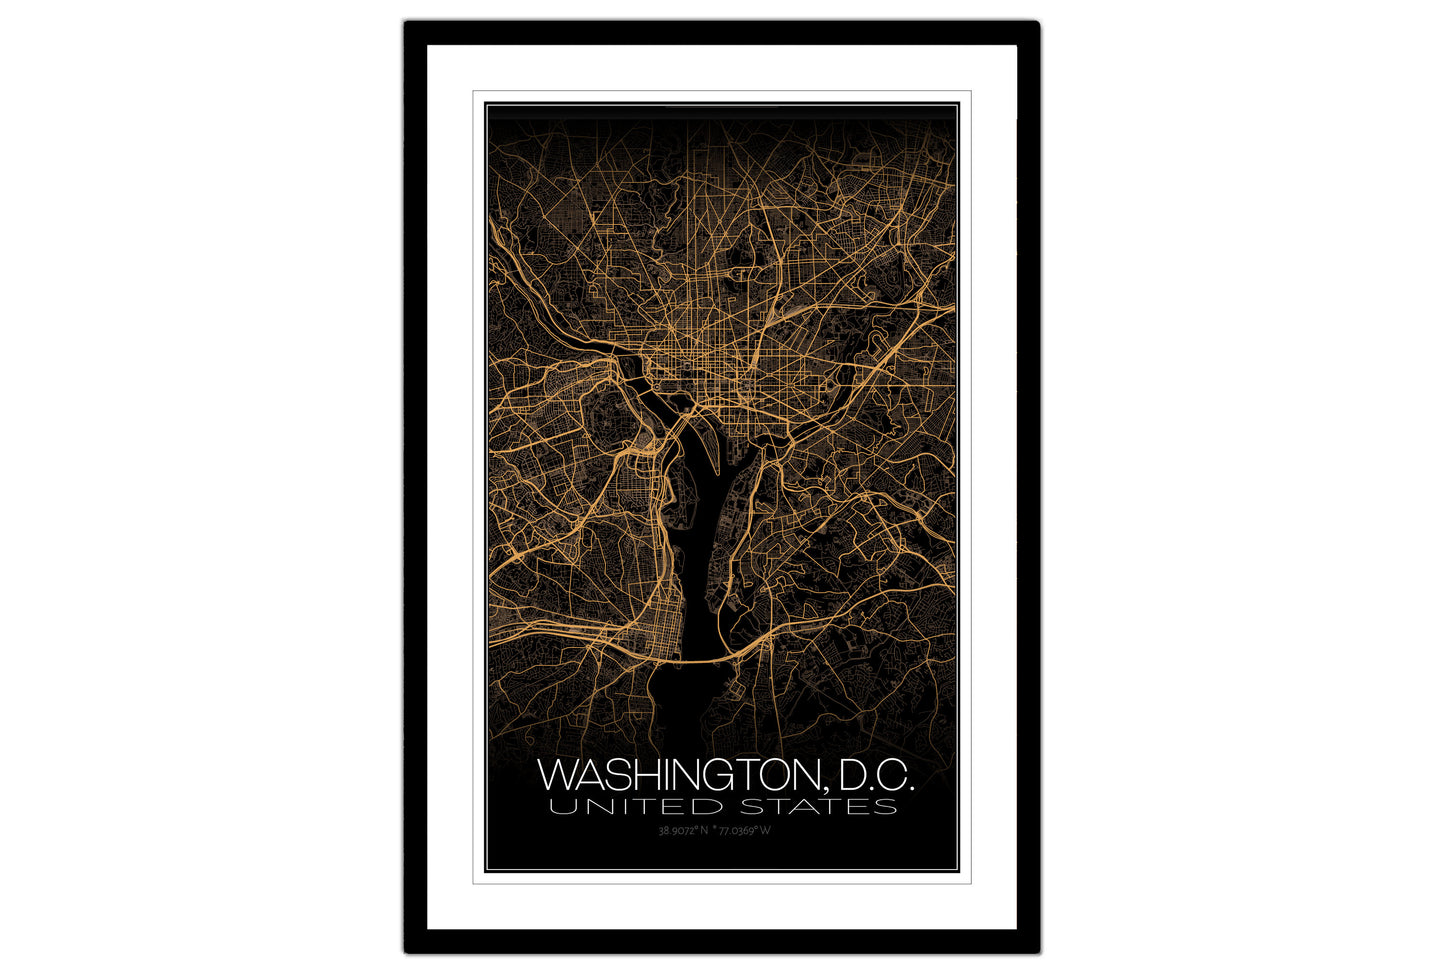 Washington D.C., United States